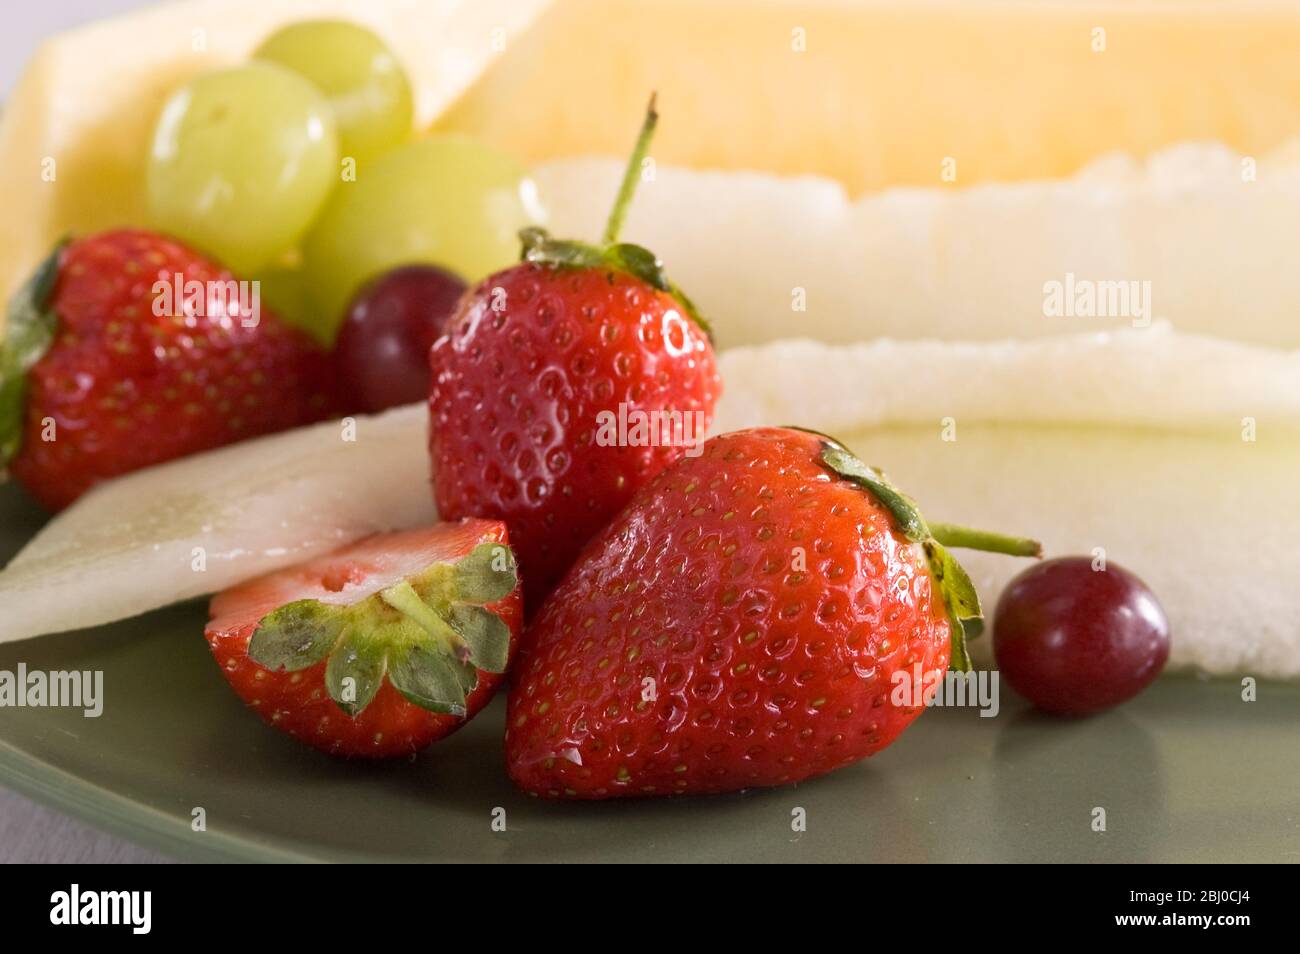 Frischer Obstsalat aus Erdbeeren, Trauben und Scheiben Melone und Ananas auf grünem Teller. - Stockfoto